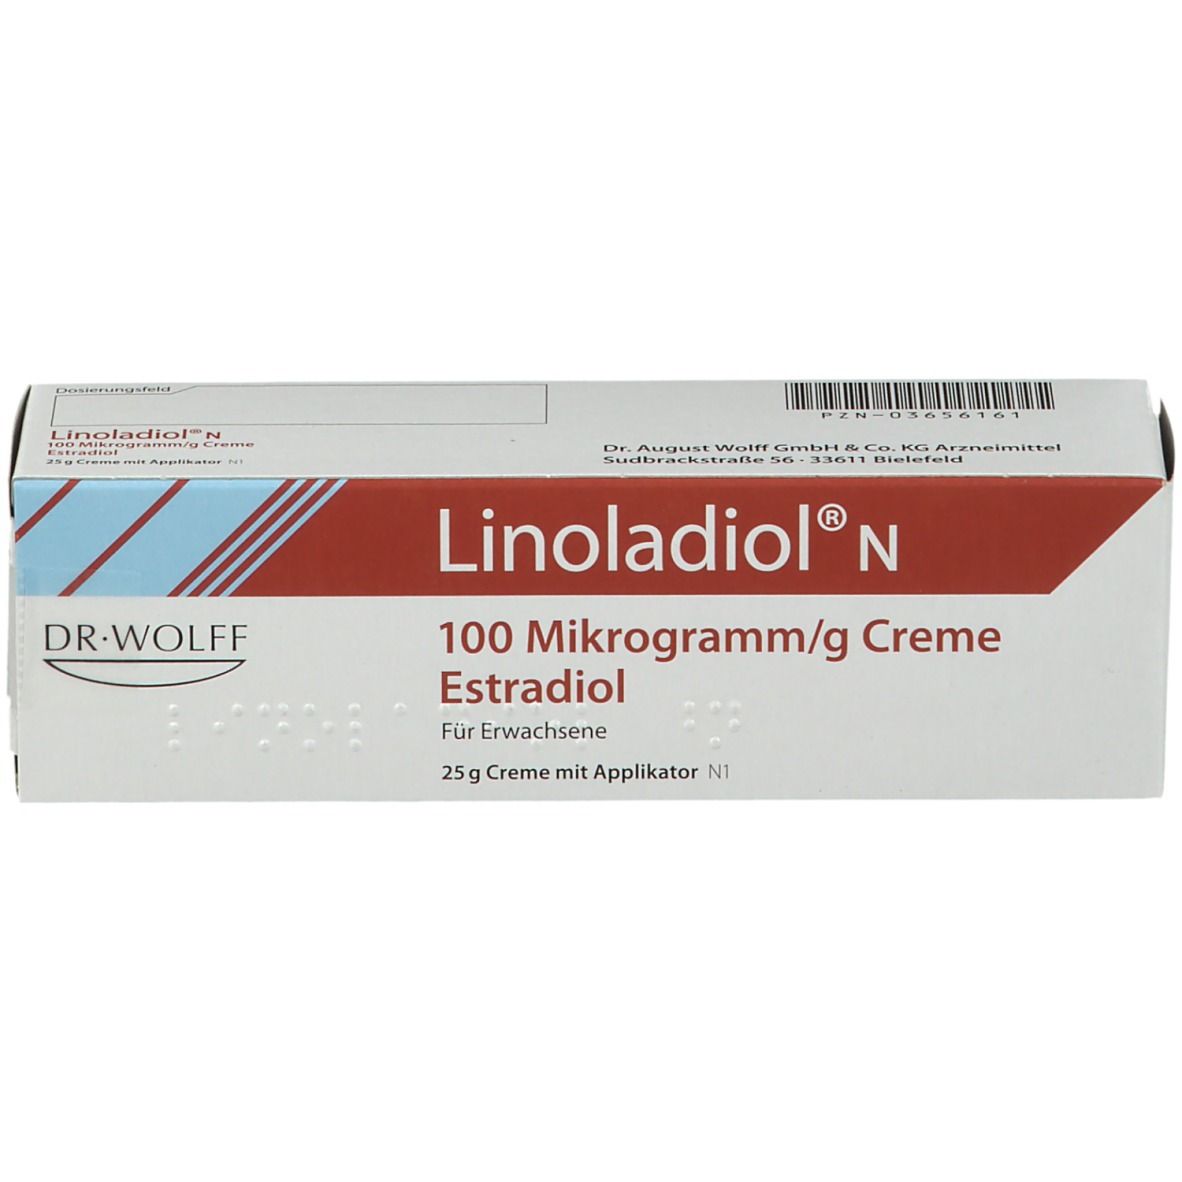 Linoladiol® N